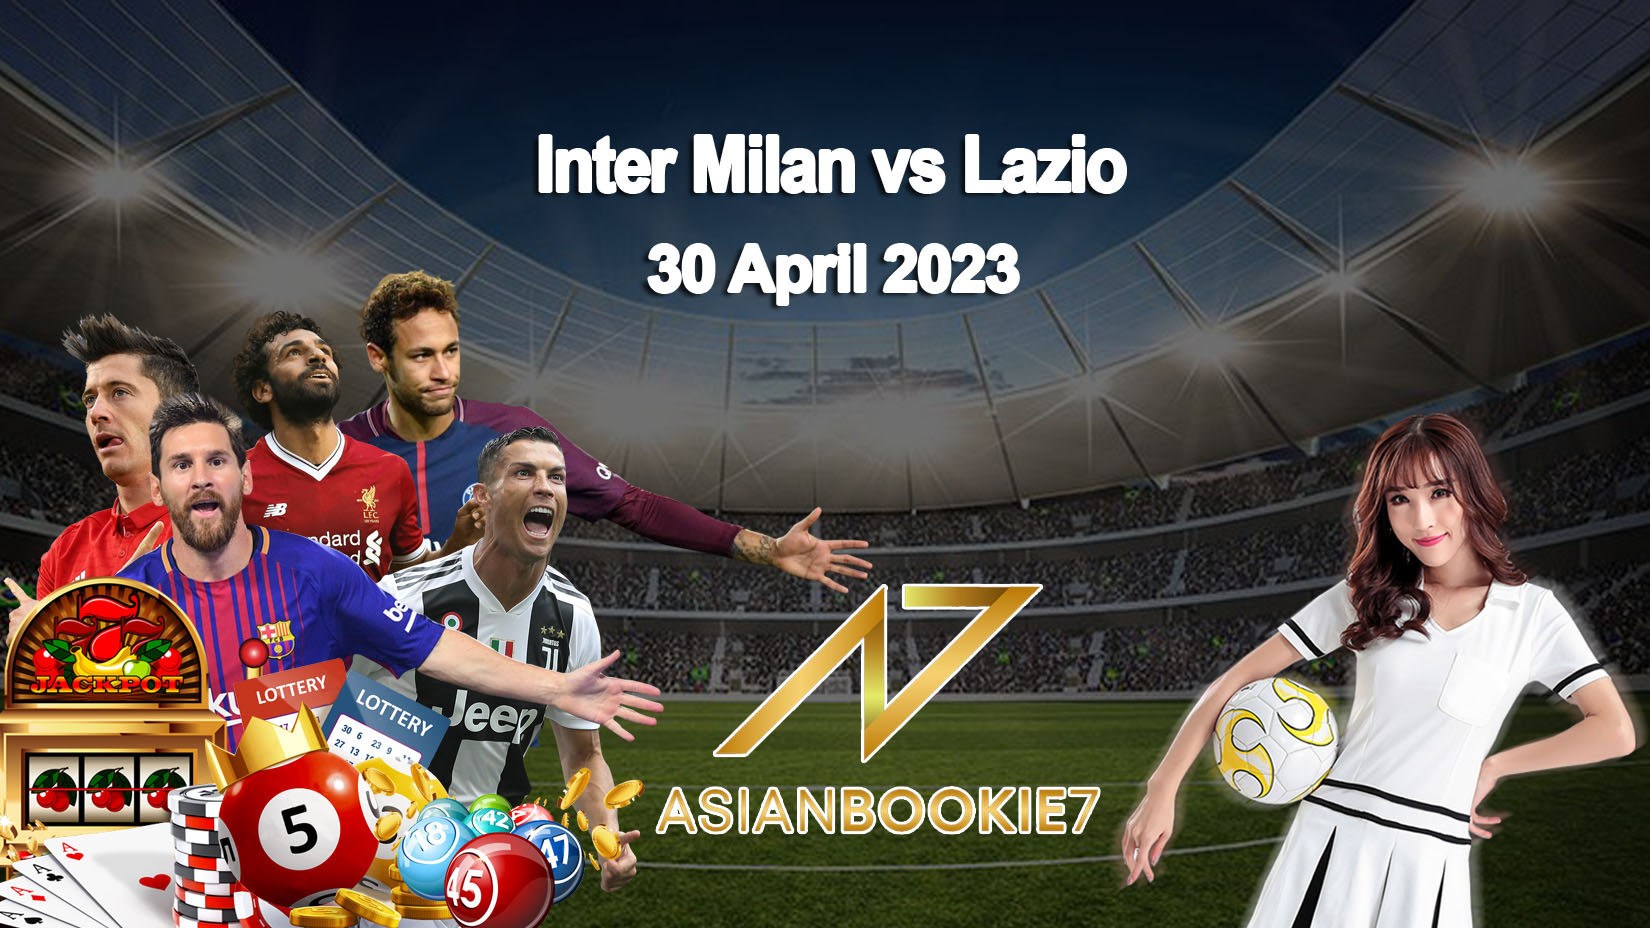 Prediksi Inter Milan vs Lazio 30 April 2023